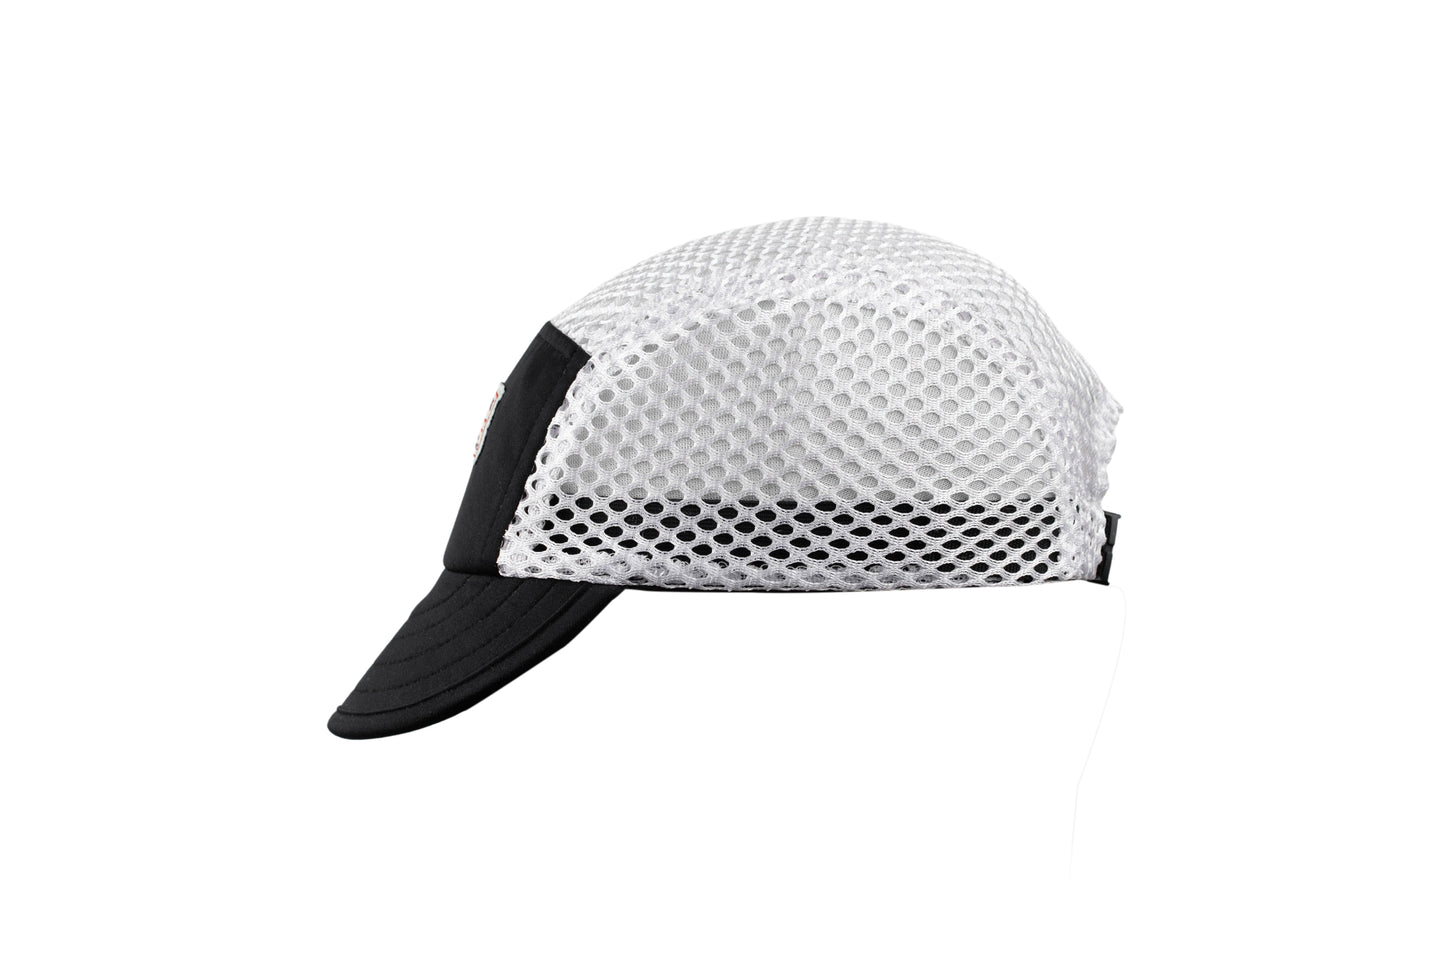 GW “Milton” Mesh Cycling cap (Black)